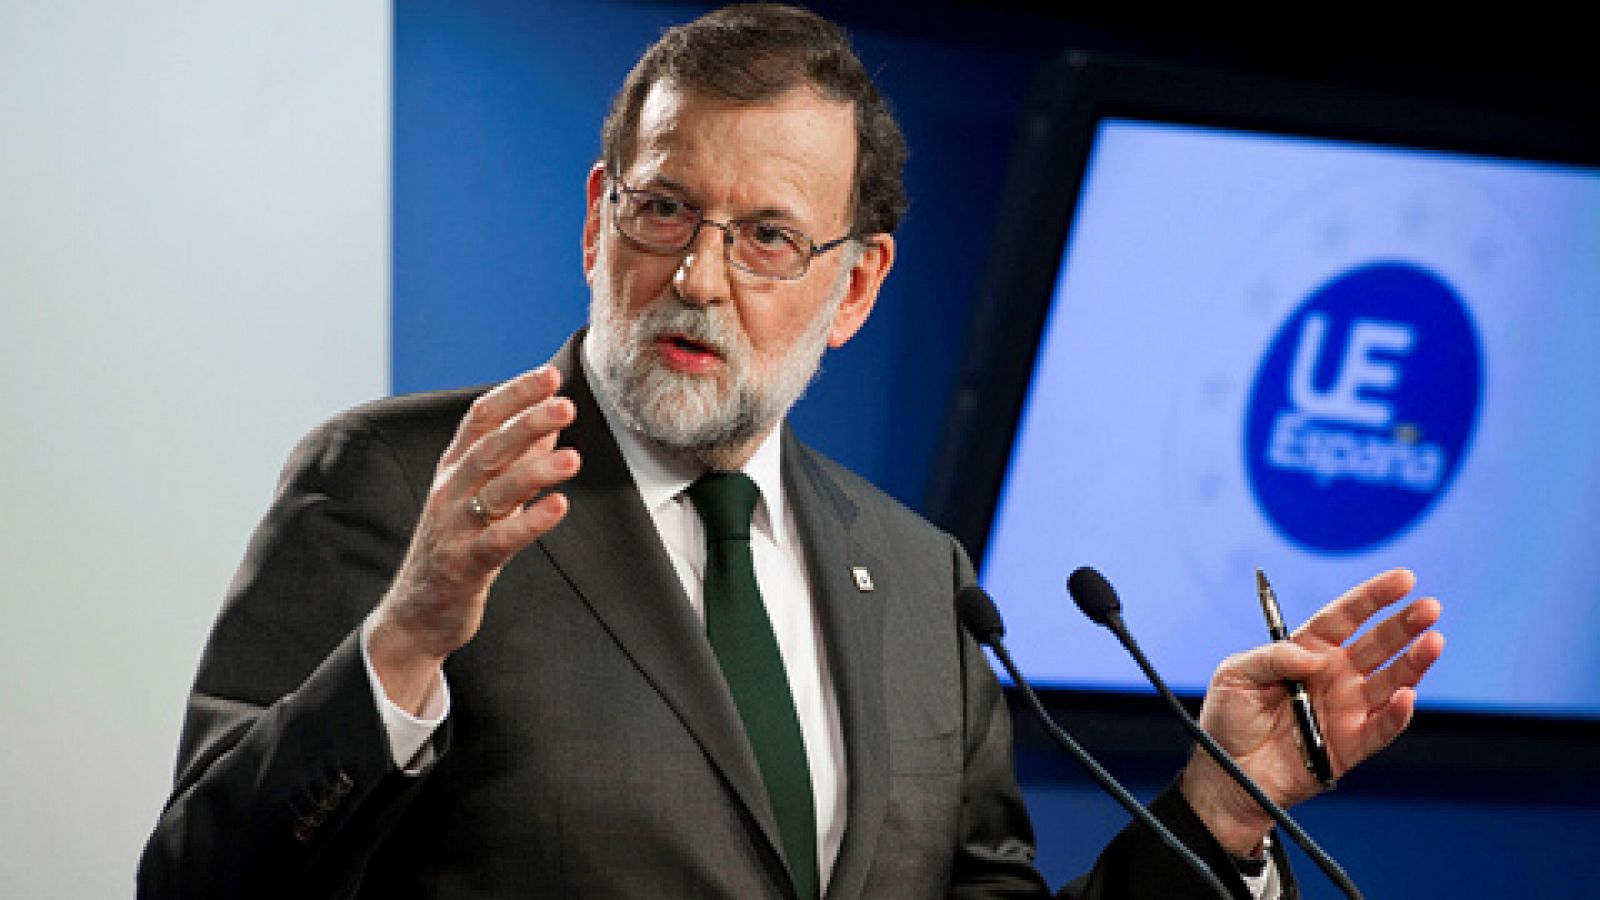 Rajoy defiende su obligación de actuar en Cataluña frente a una situación límite